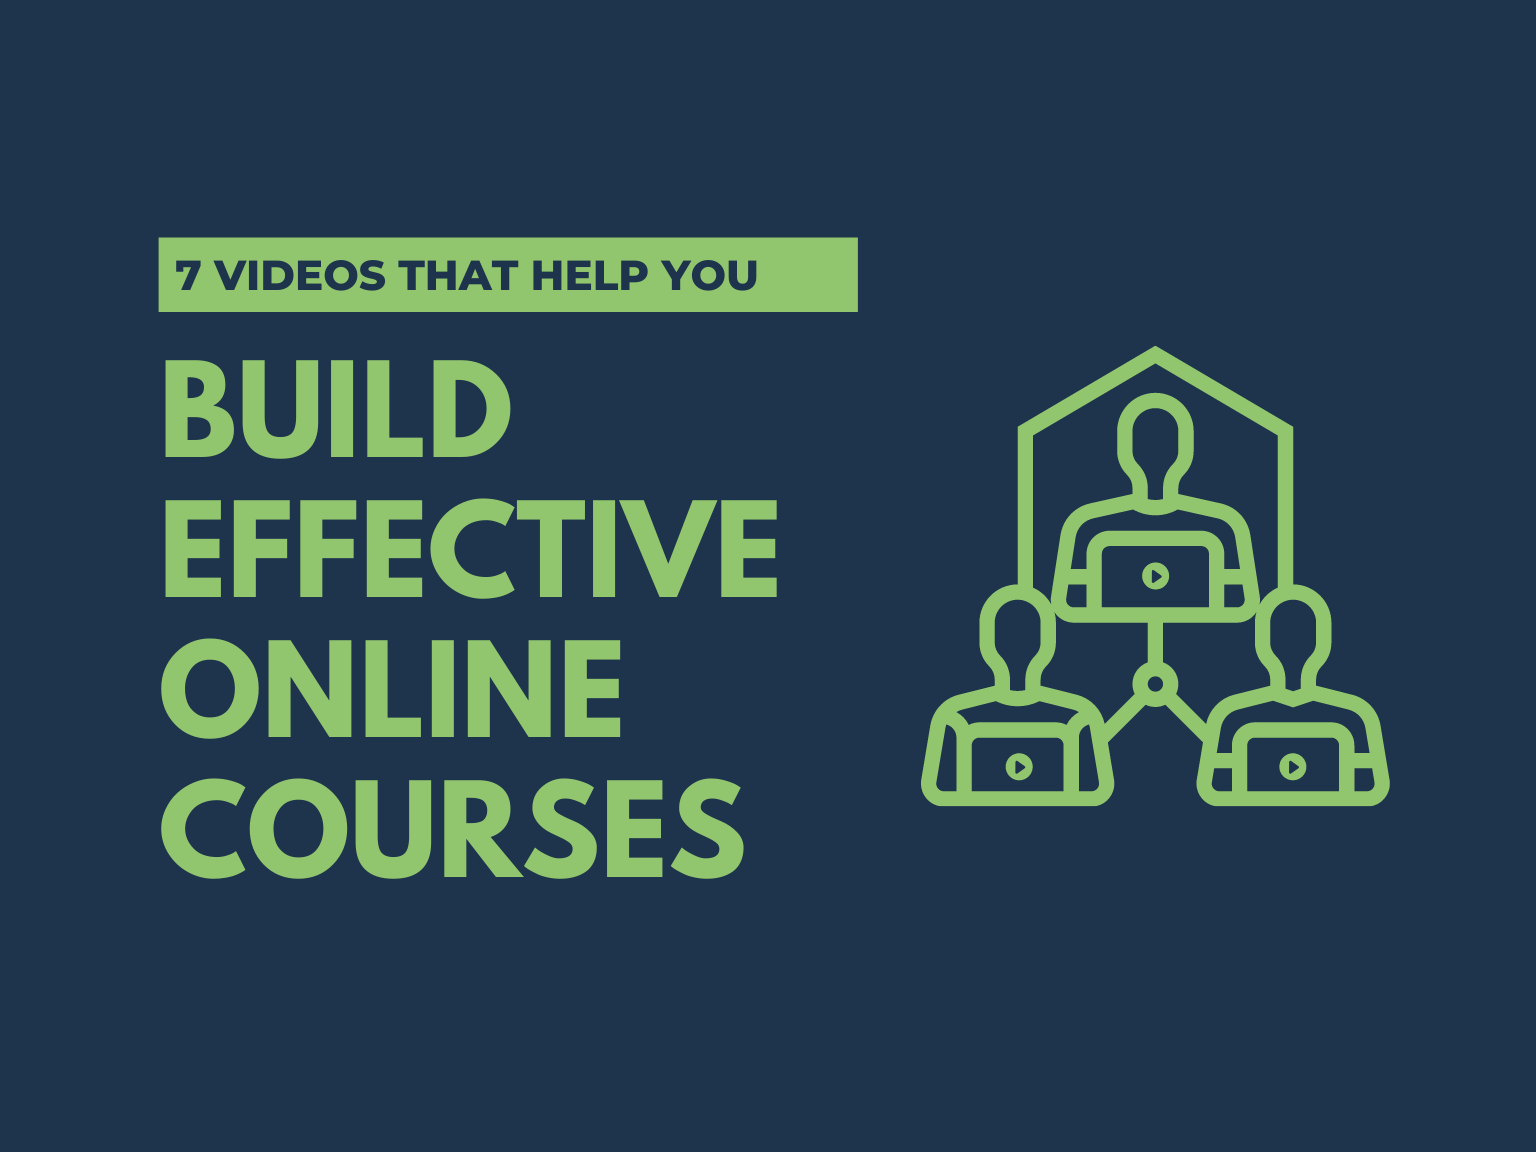 Différents types de vidéo peuvent vous aider à optimiser vos cours en ligne.